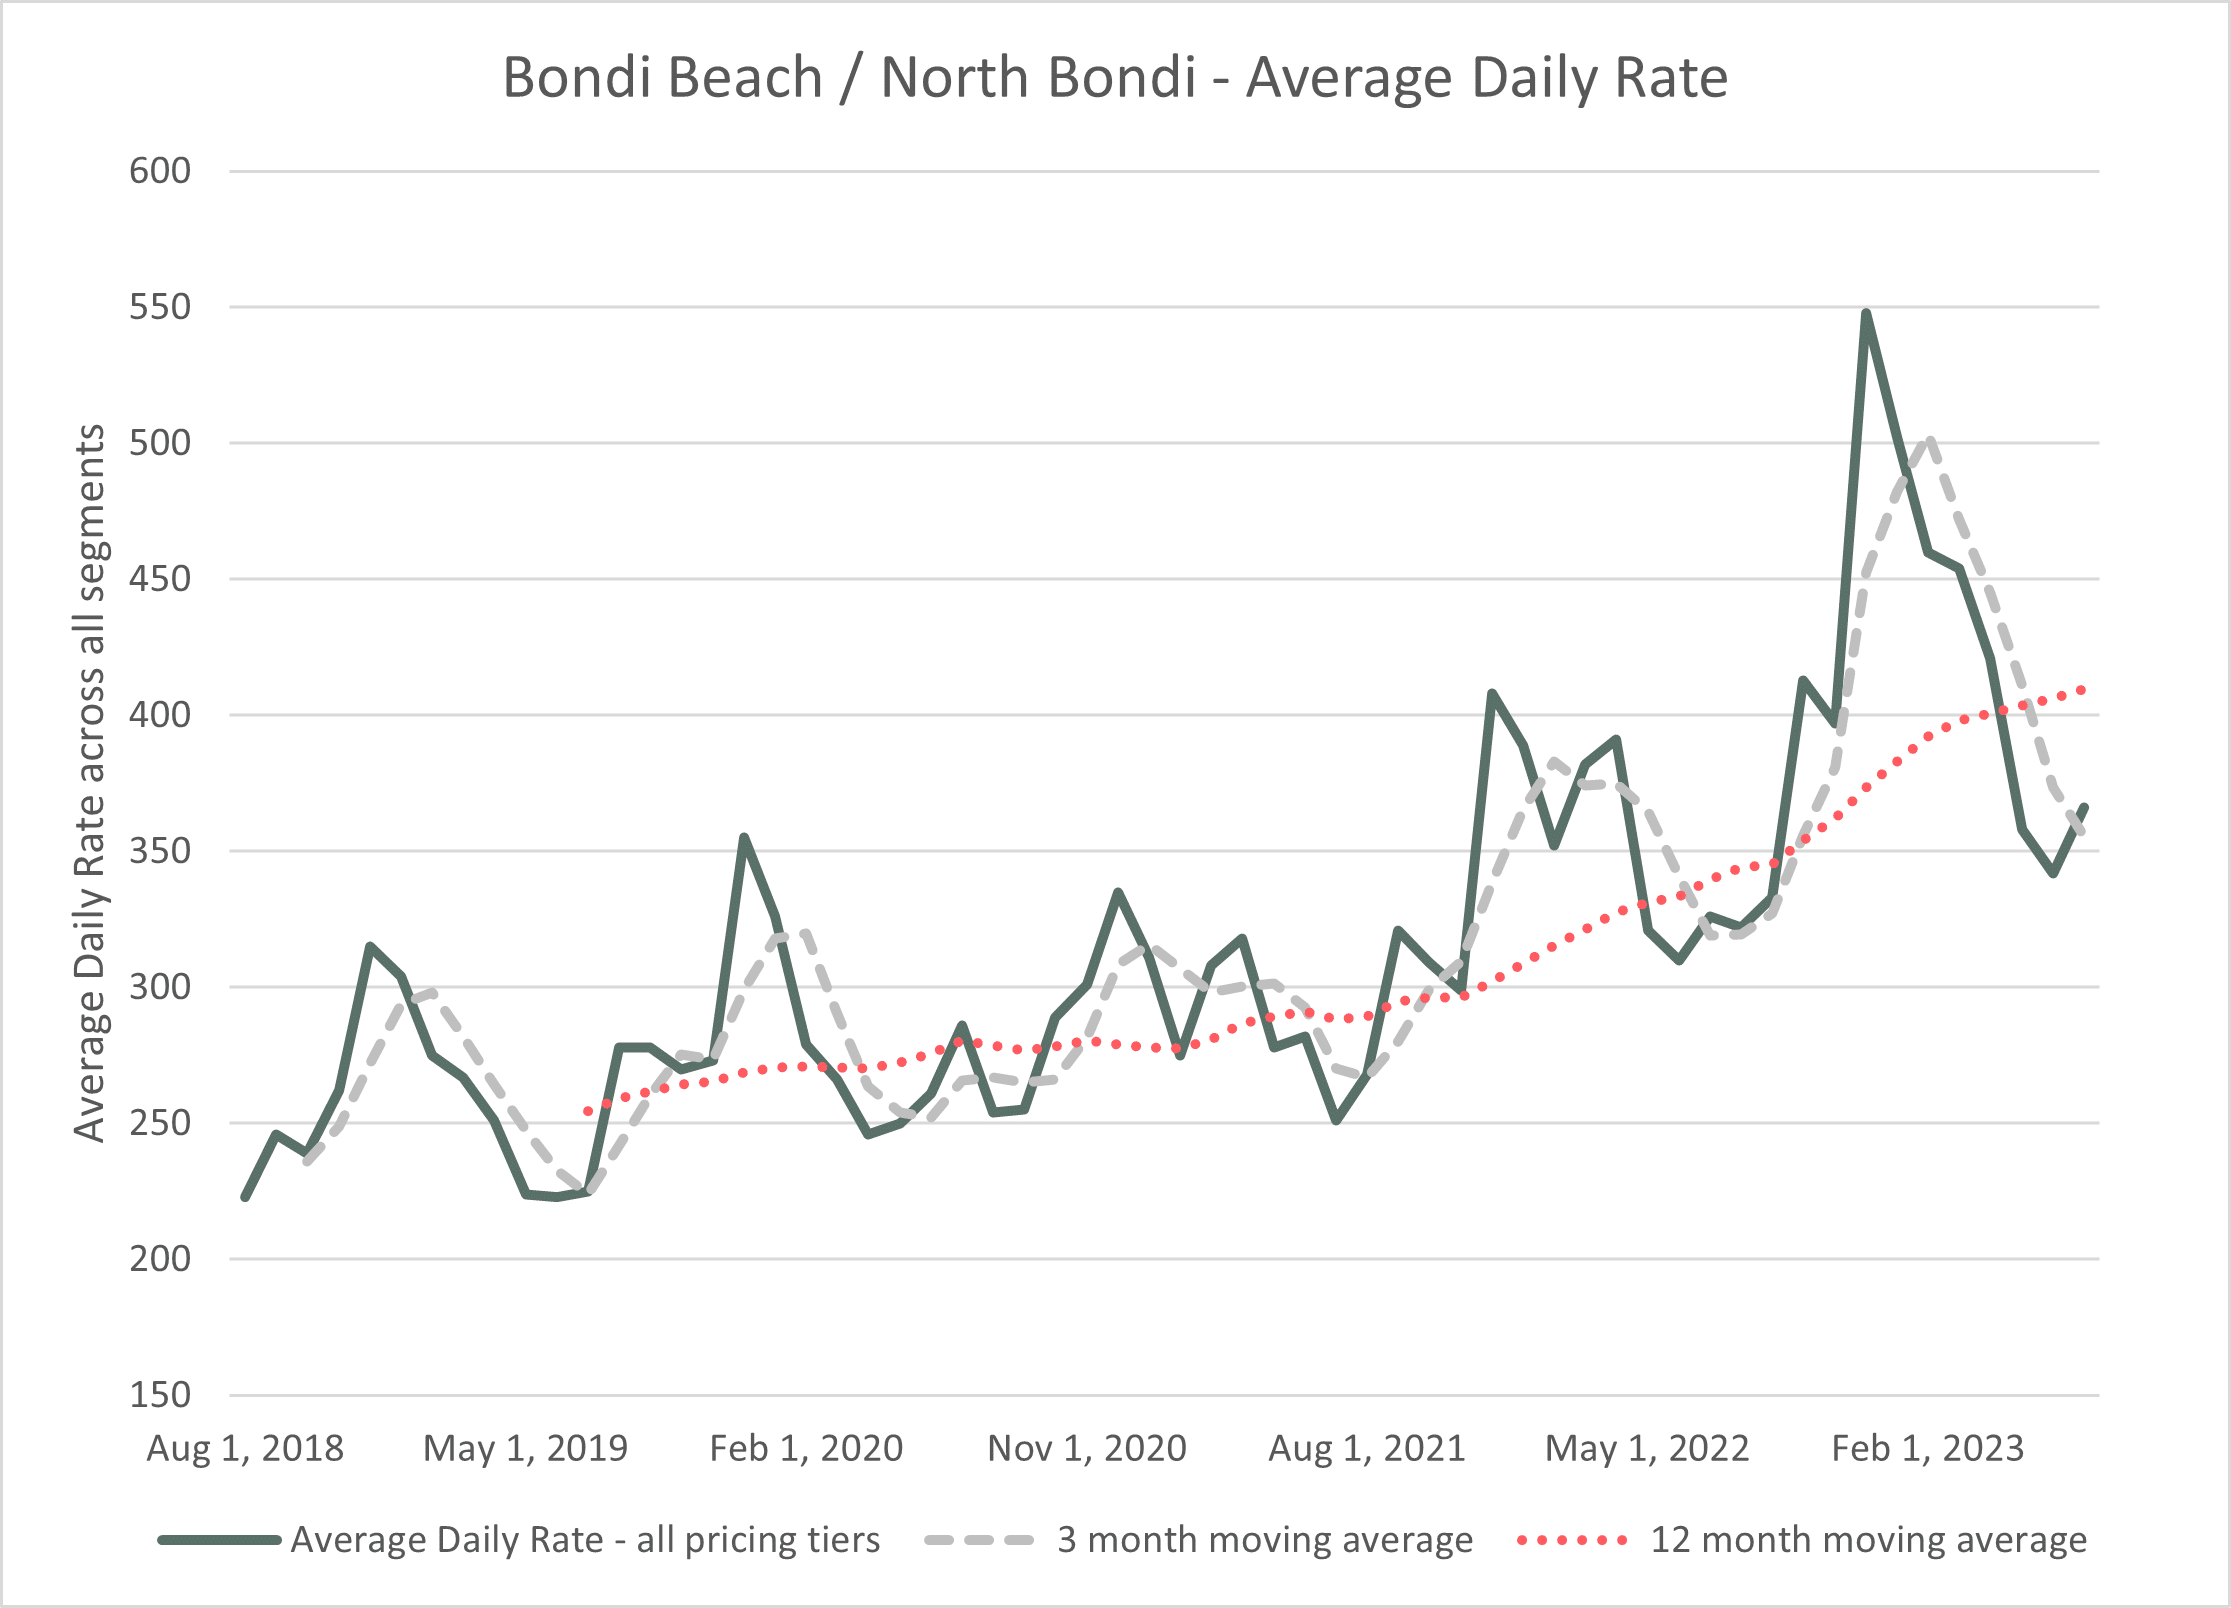 Bondi Average Daily Rates